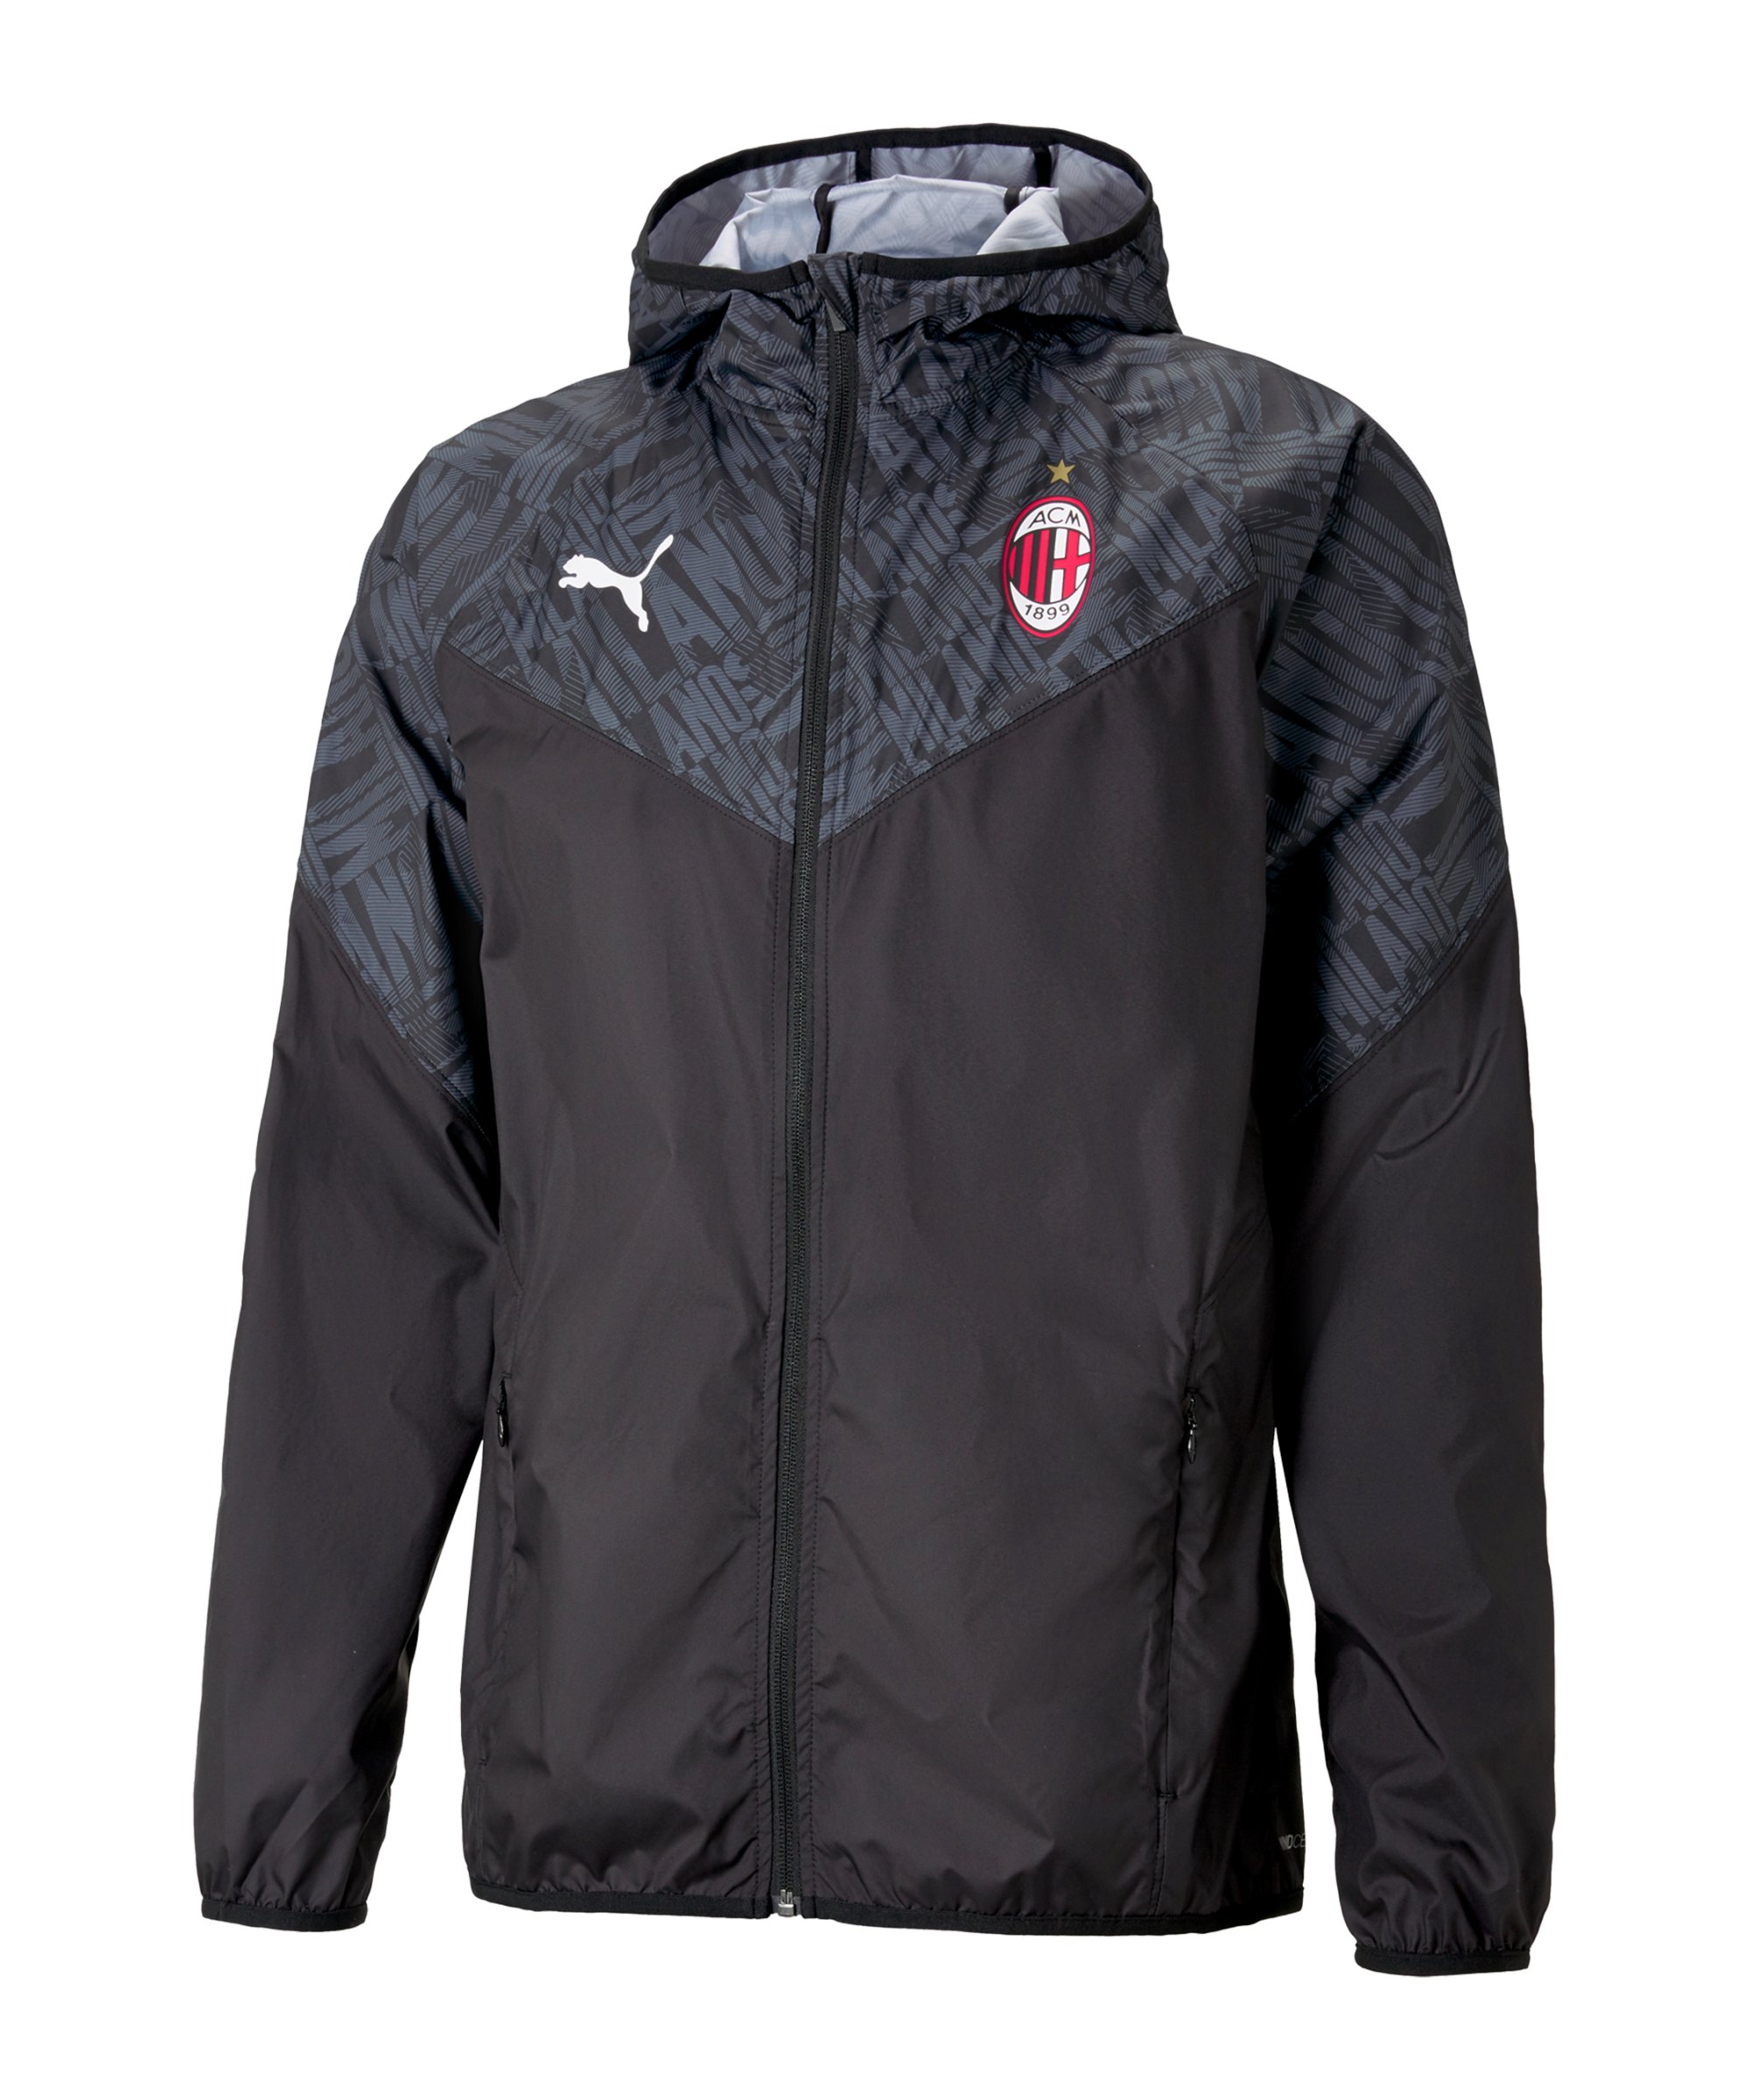 PUMA AC Mailand Warmup Jacke Schwarz Rot F02 - schwarz